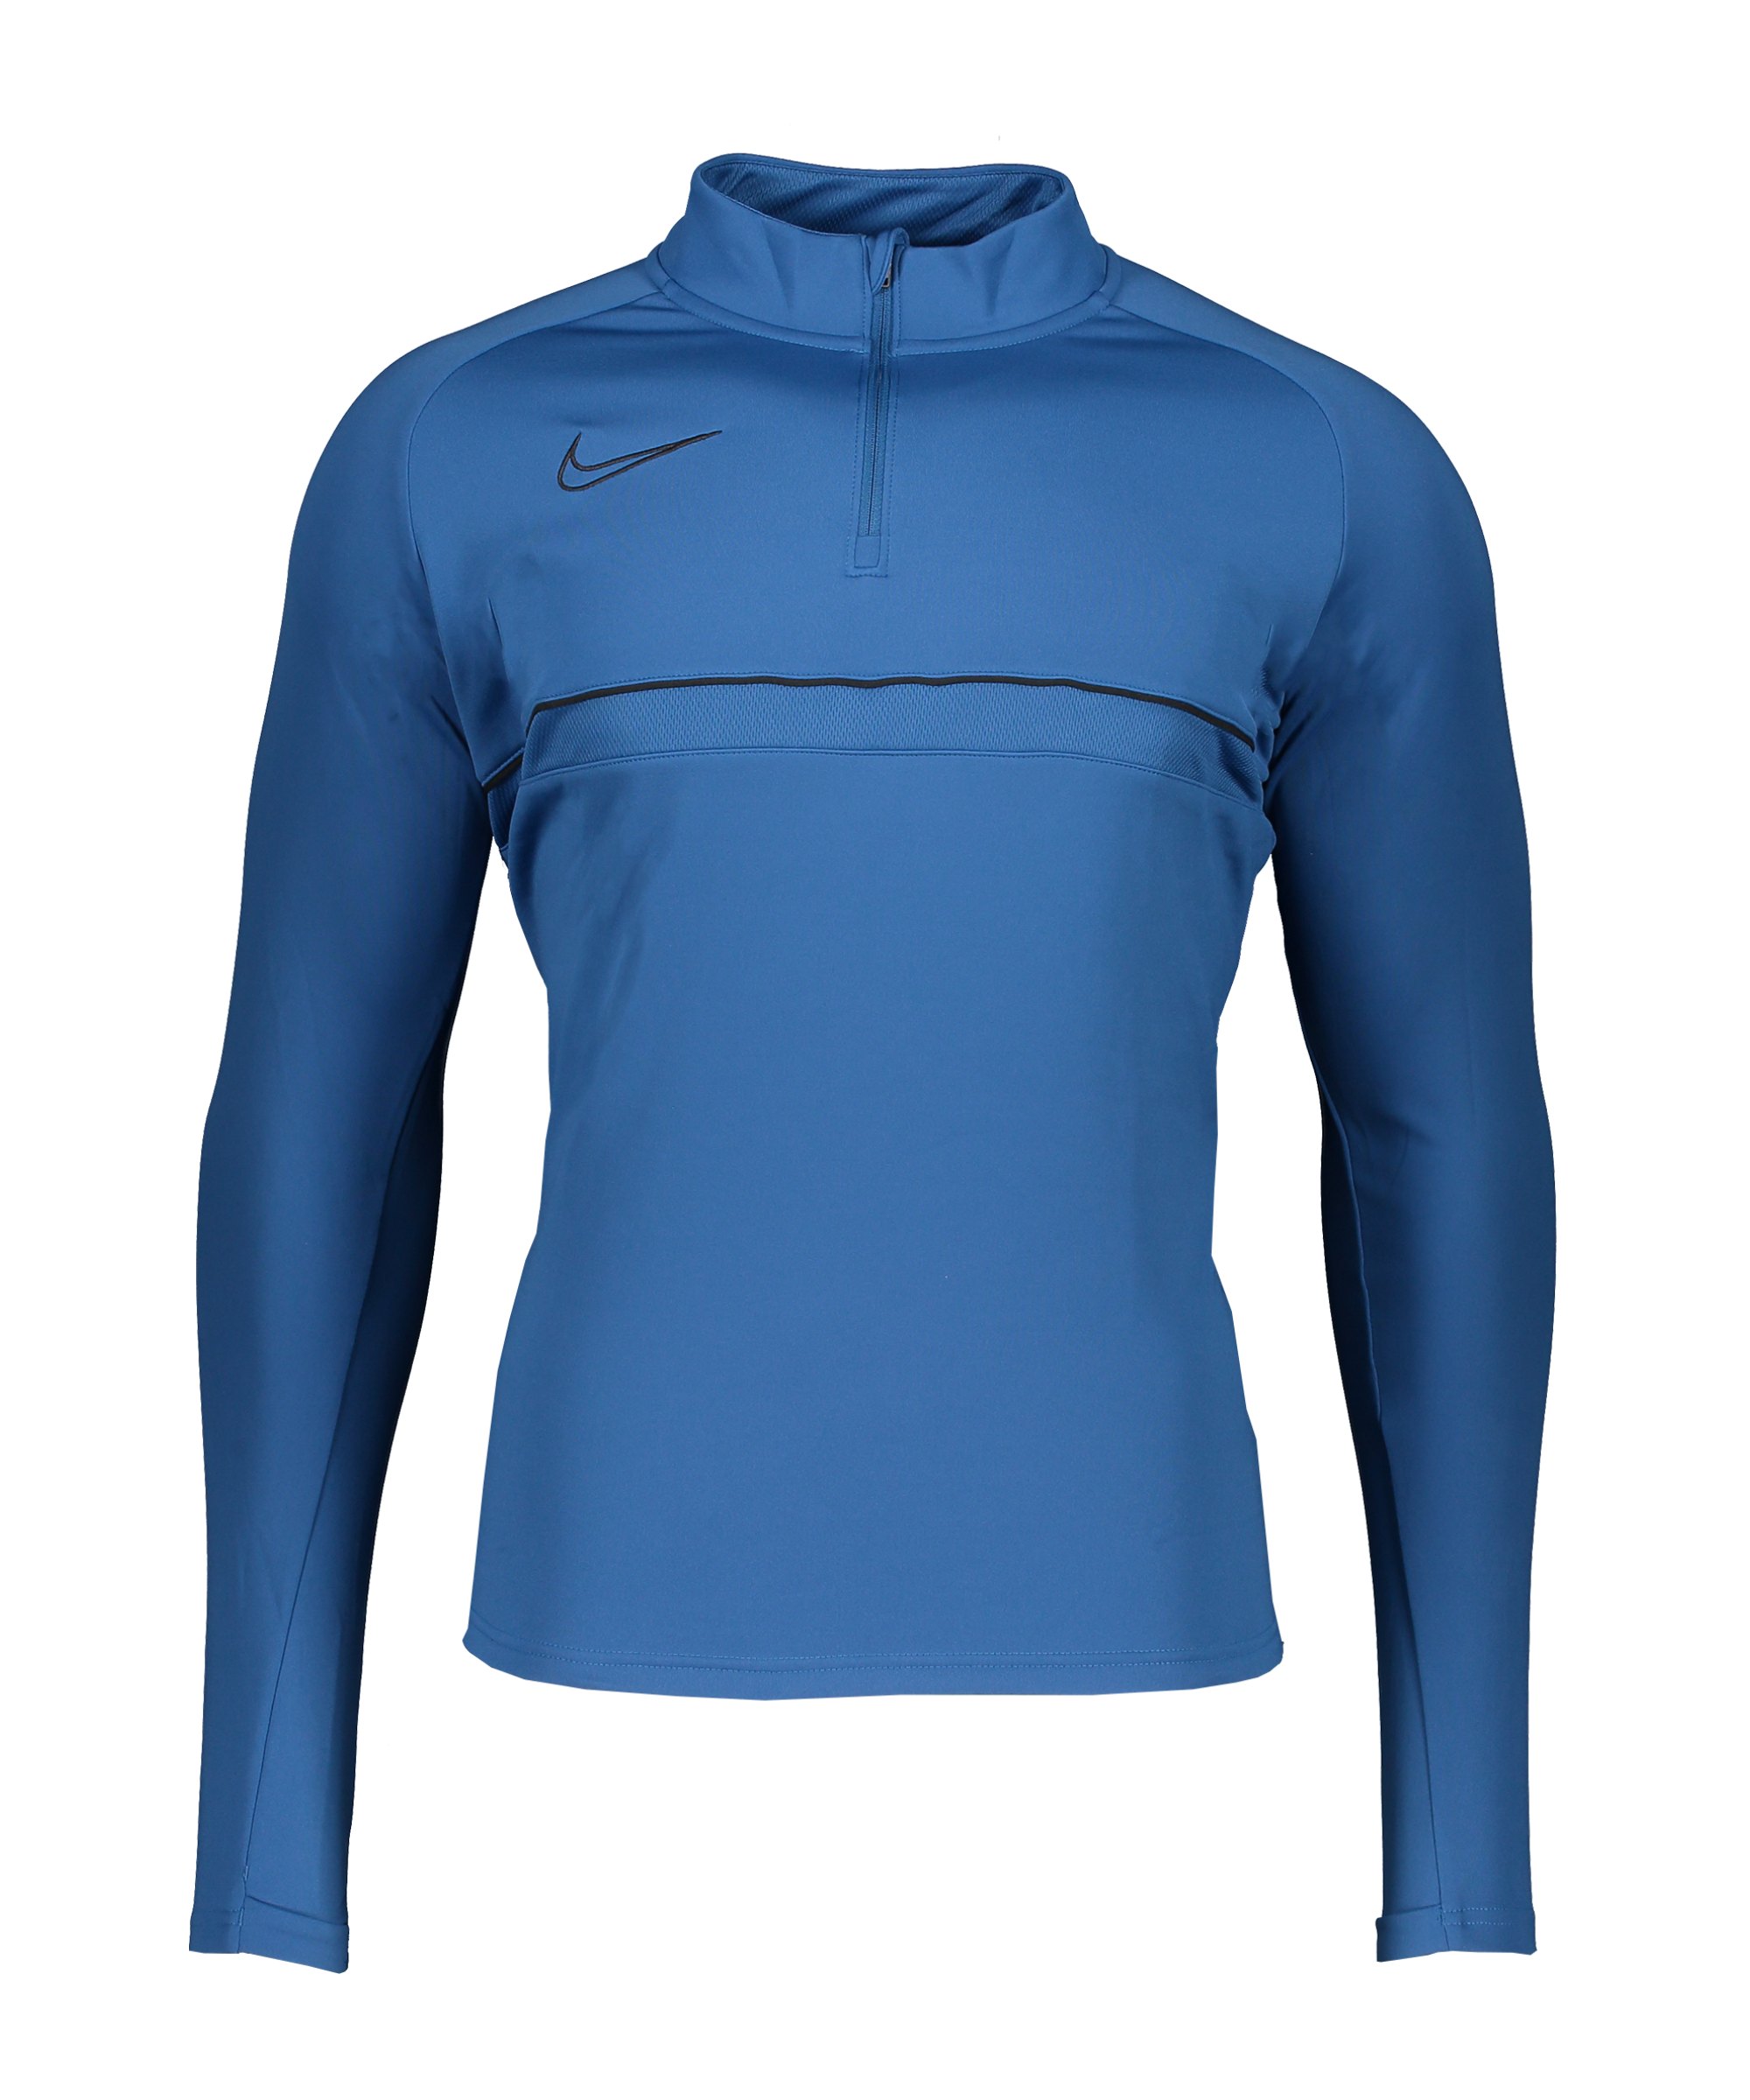 Nike Academy 21 Drill Top Blau Schwarz F407 - blau